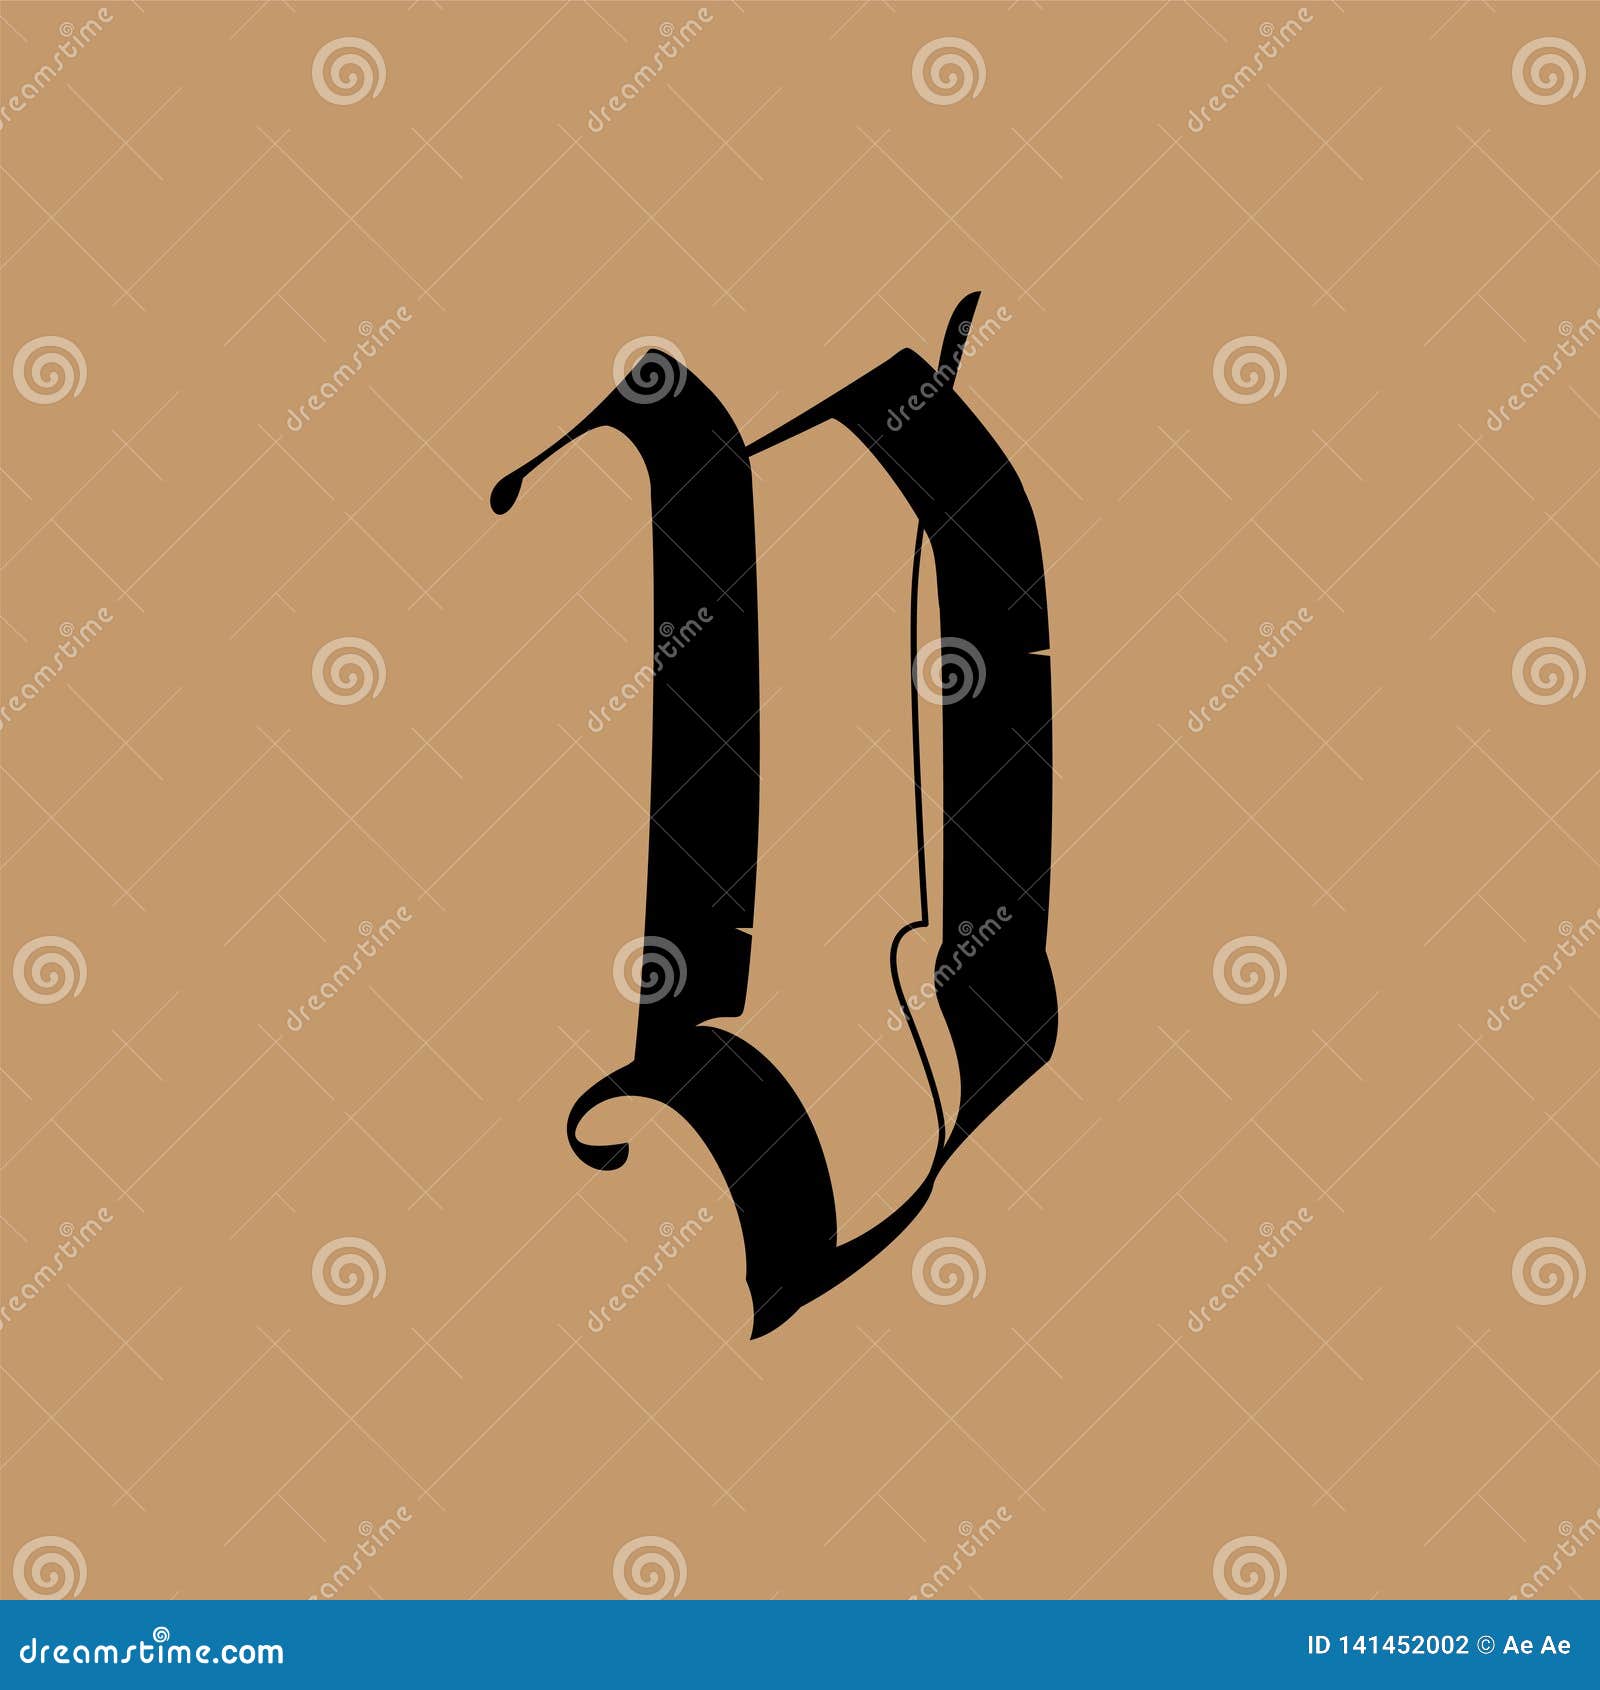 Premium Vector | Alphabet d tattoo logo